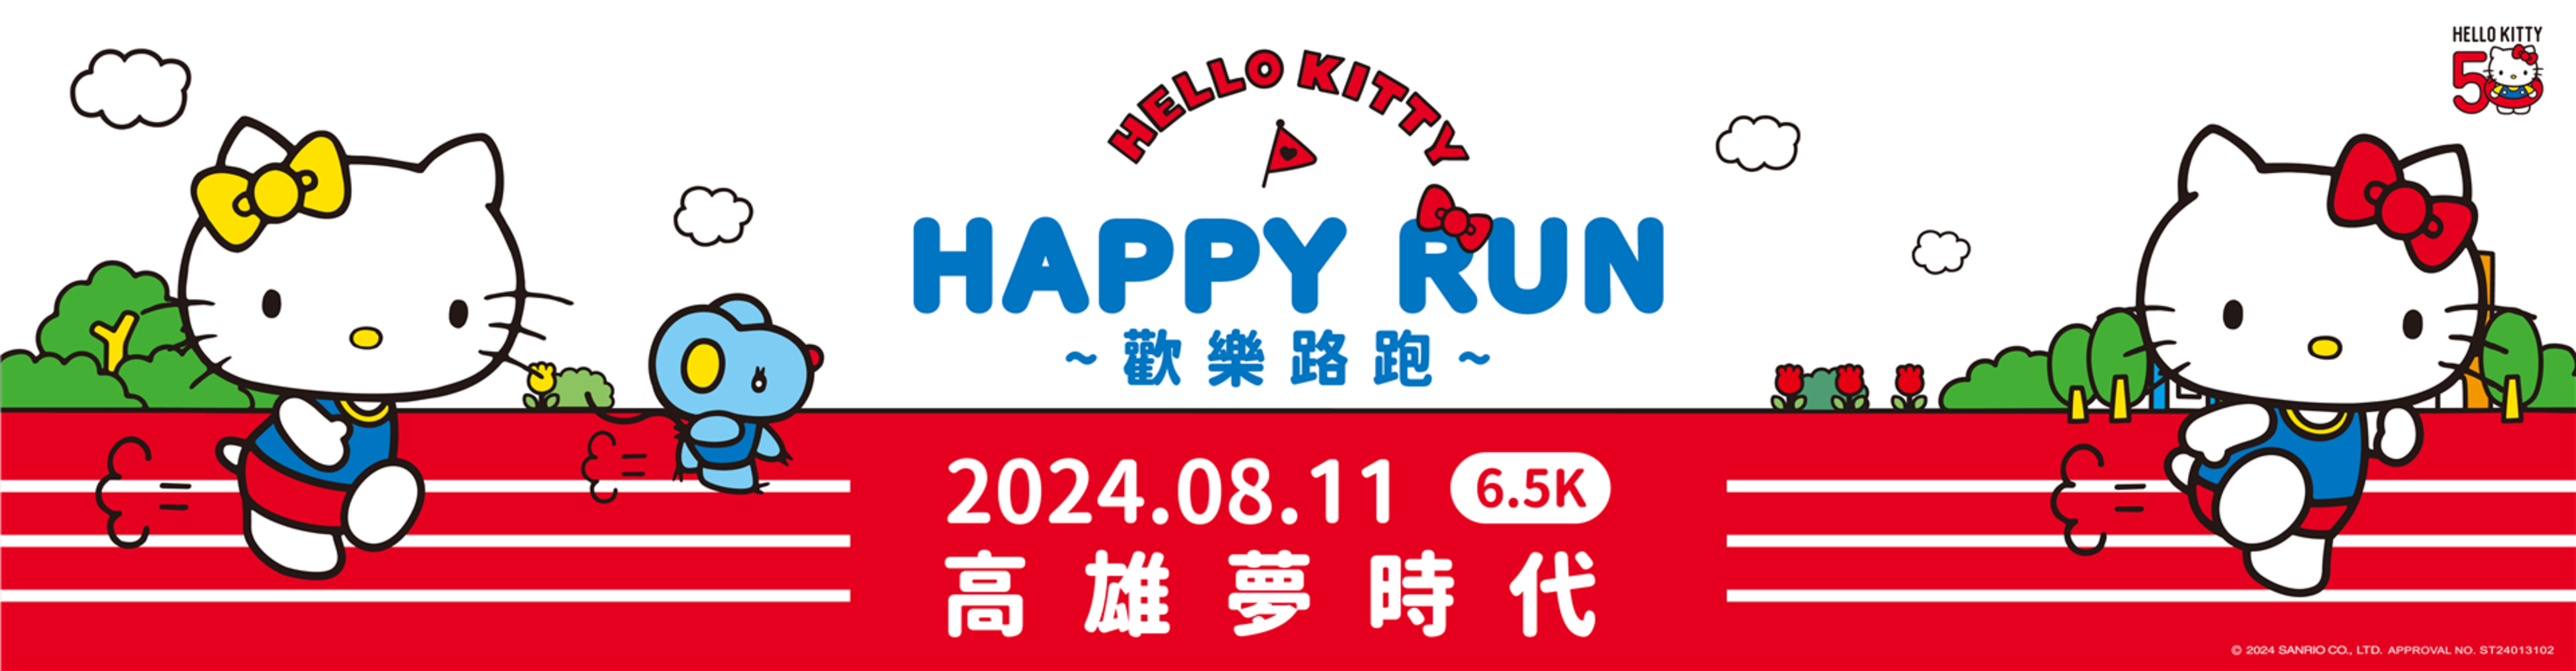 HELLO KITTY HAPPY RUN 高雄場